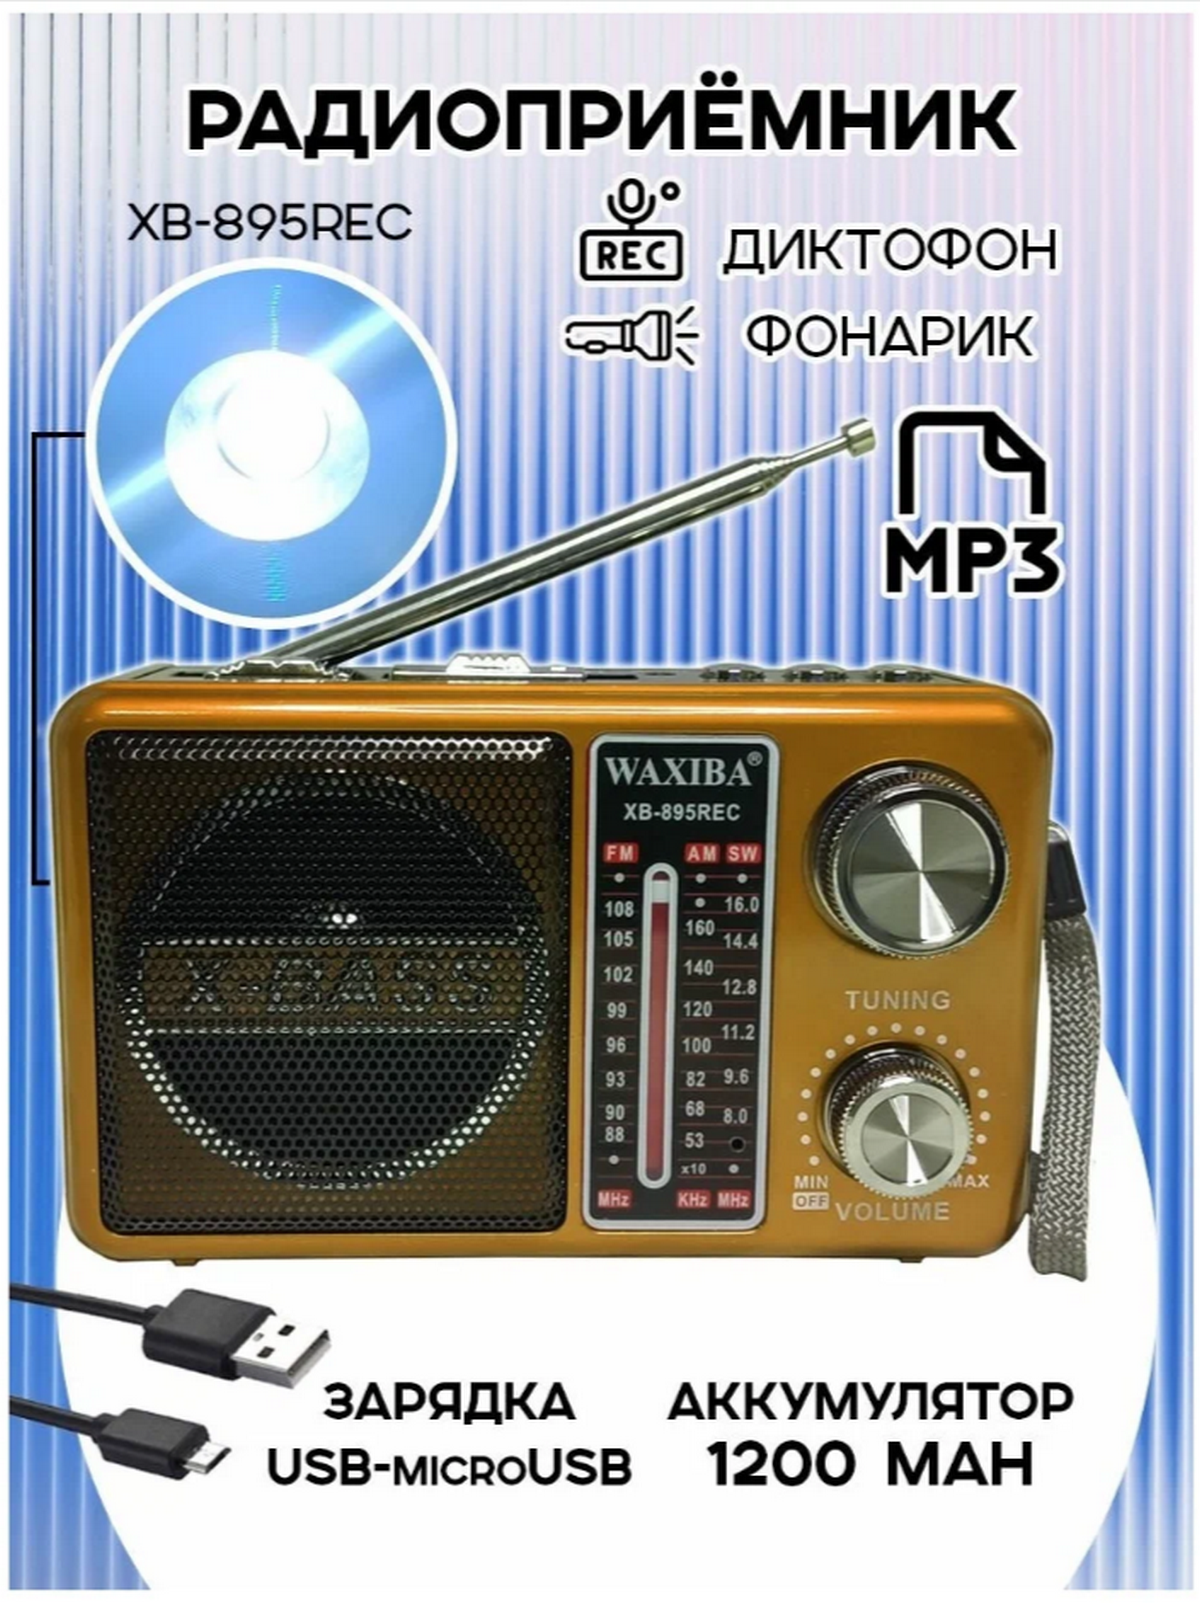 Радиоприемник Waxiba XB-895REC (USB/TF/BT) фонарик (золотистый)